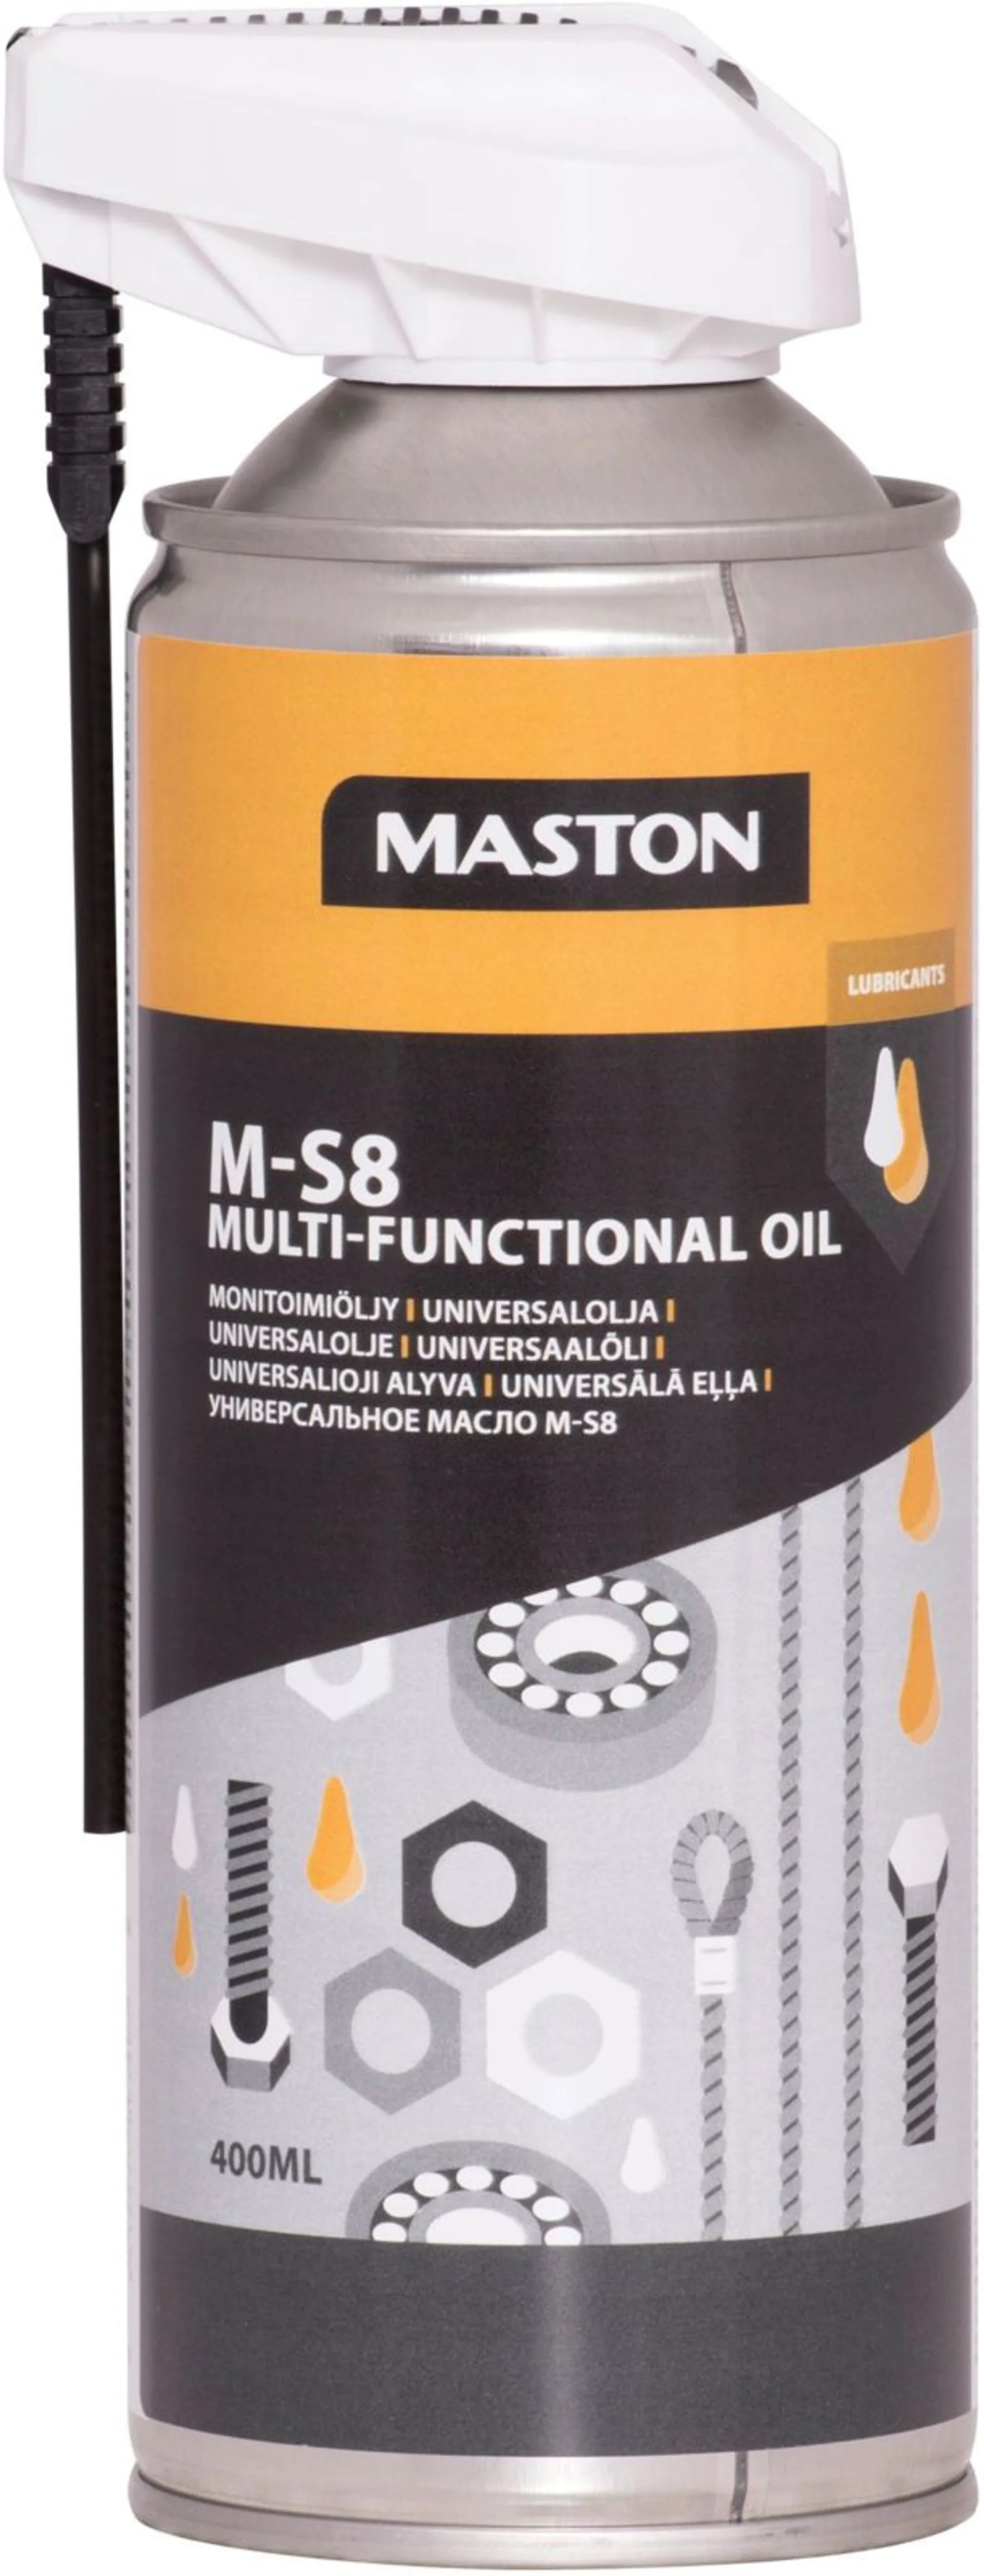 Maston M-S8 monitoimiöljy 400ml